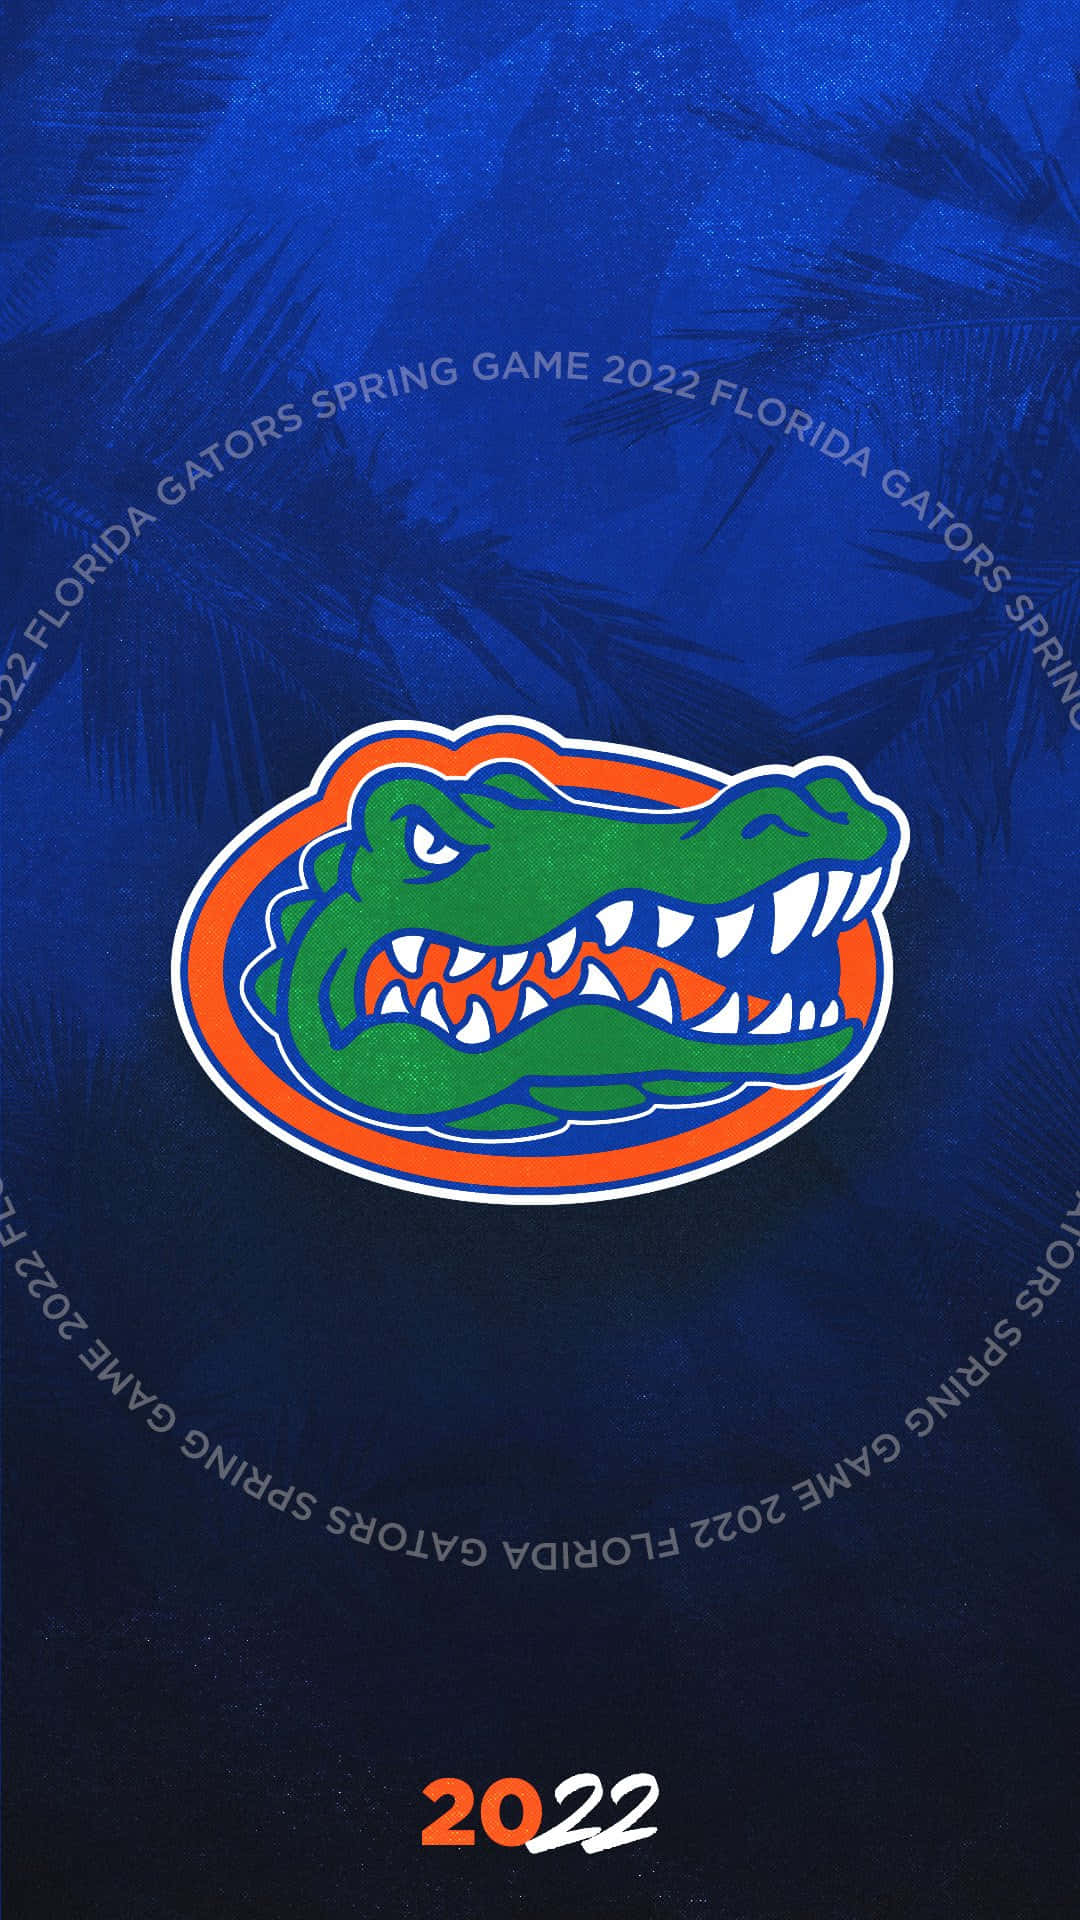 Logodel Juego De Primavera De Los Florida Gators 2020 Fondo de pantalla